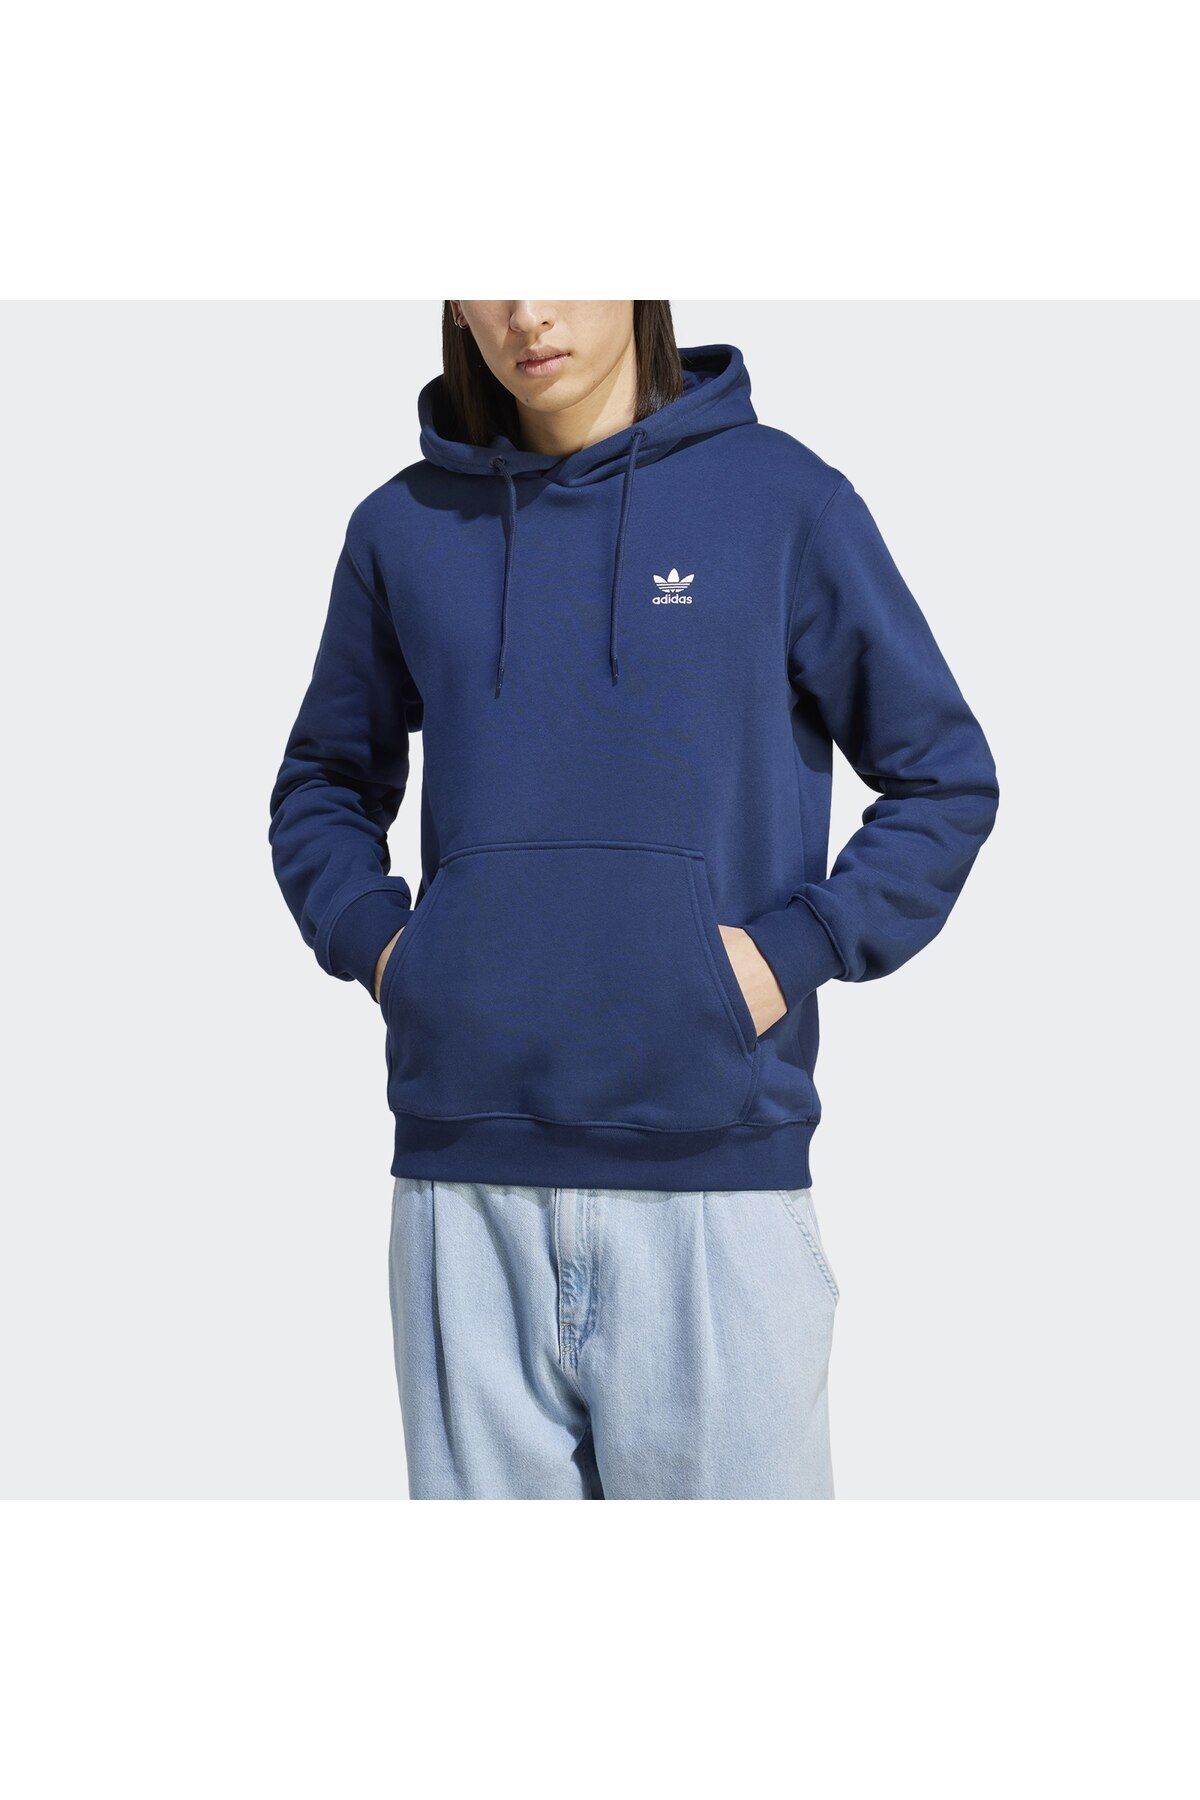 adidas Trefoil Essentials Erkek Sweatshirt Im4524